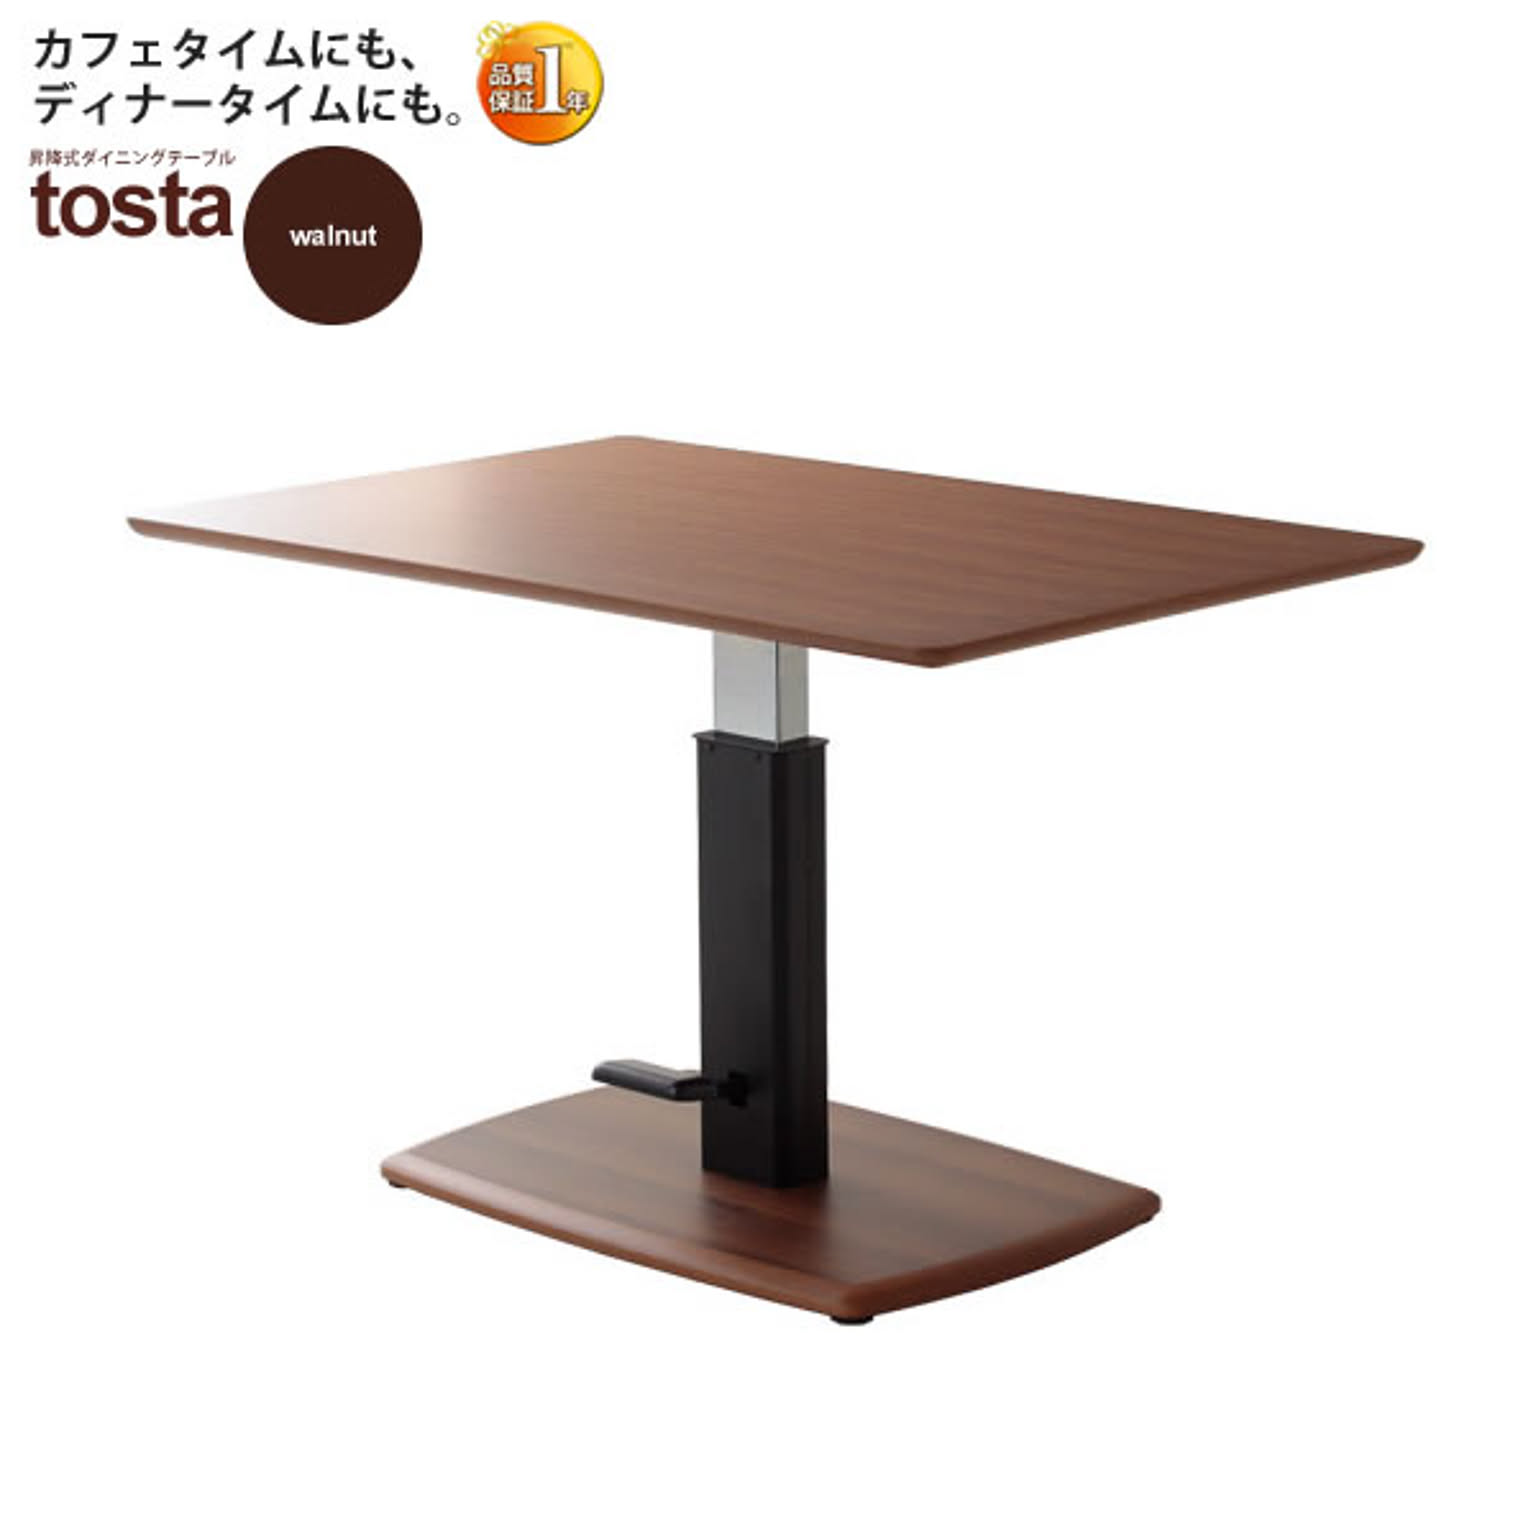 ダイニングテーブル 昇降 高さ調節 コーヒーテーブル センターテーブル【tosta】 ブラウン(brown) (アーバン) 幅120 カフェ 食卓 つくえ 机 